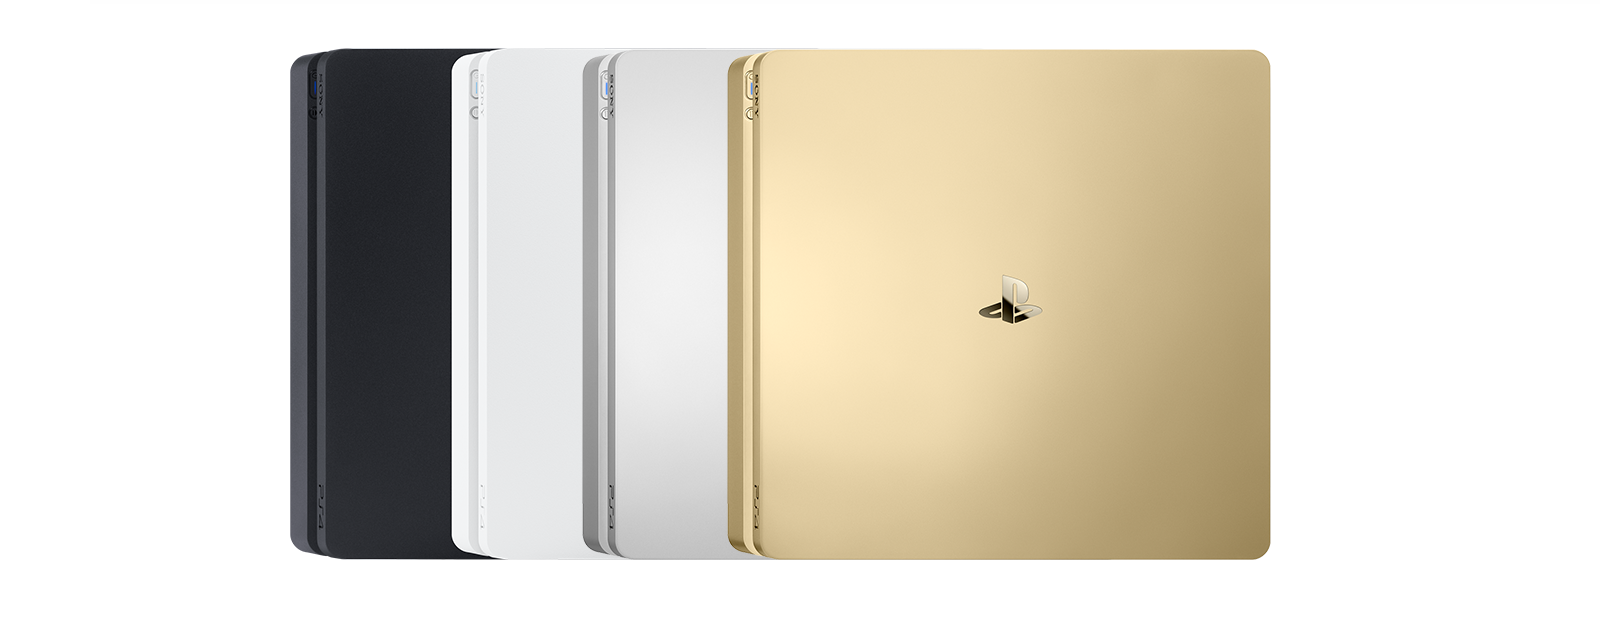 приставка Sony PlayStation 4 Slim исполняется в разных цветах 